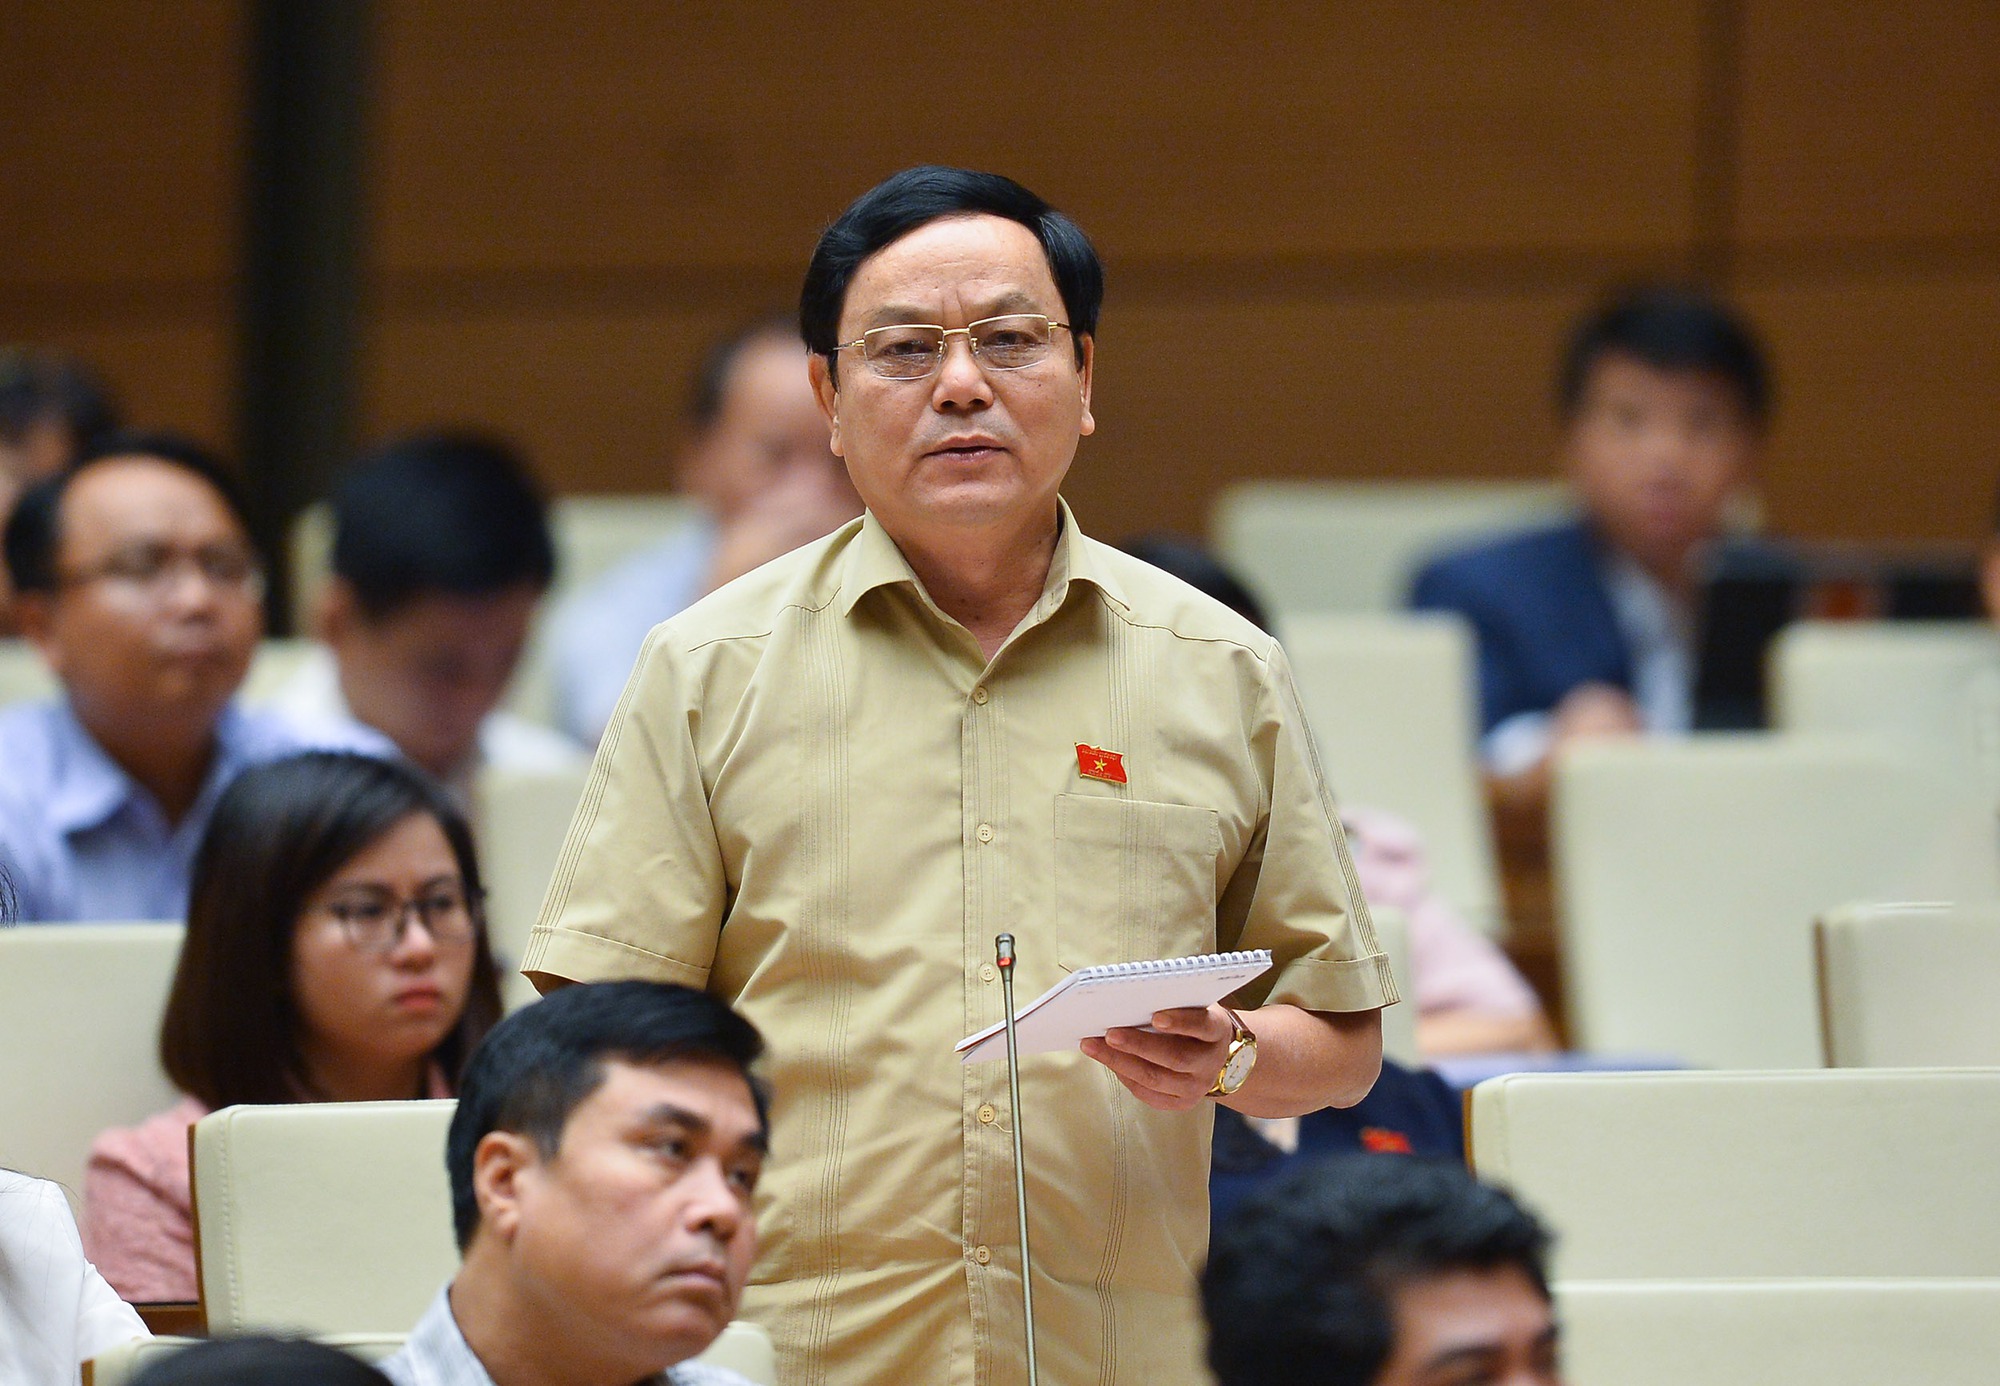 Chánh án Nguyễn Hòa Bình và Viện trưởng Lê Minh Trí cung cấp thông tin về vụ án buôn lậu gỗ trắc 11 năm trước - Ảnh 4.